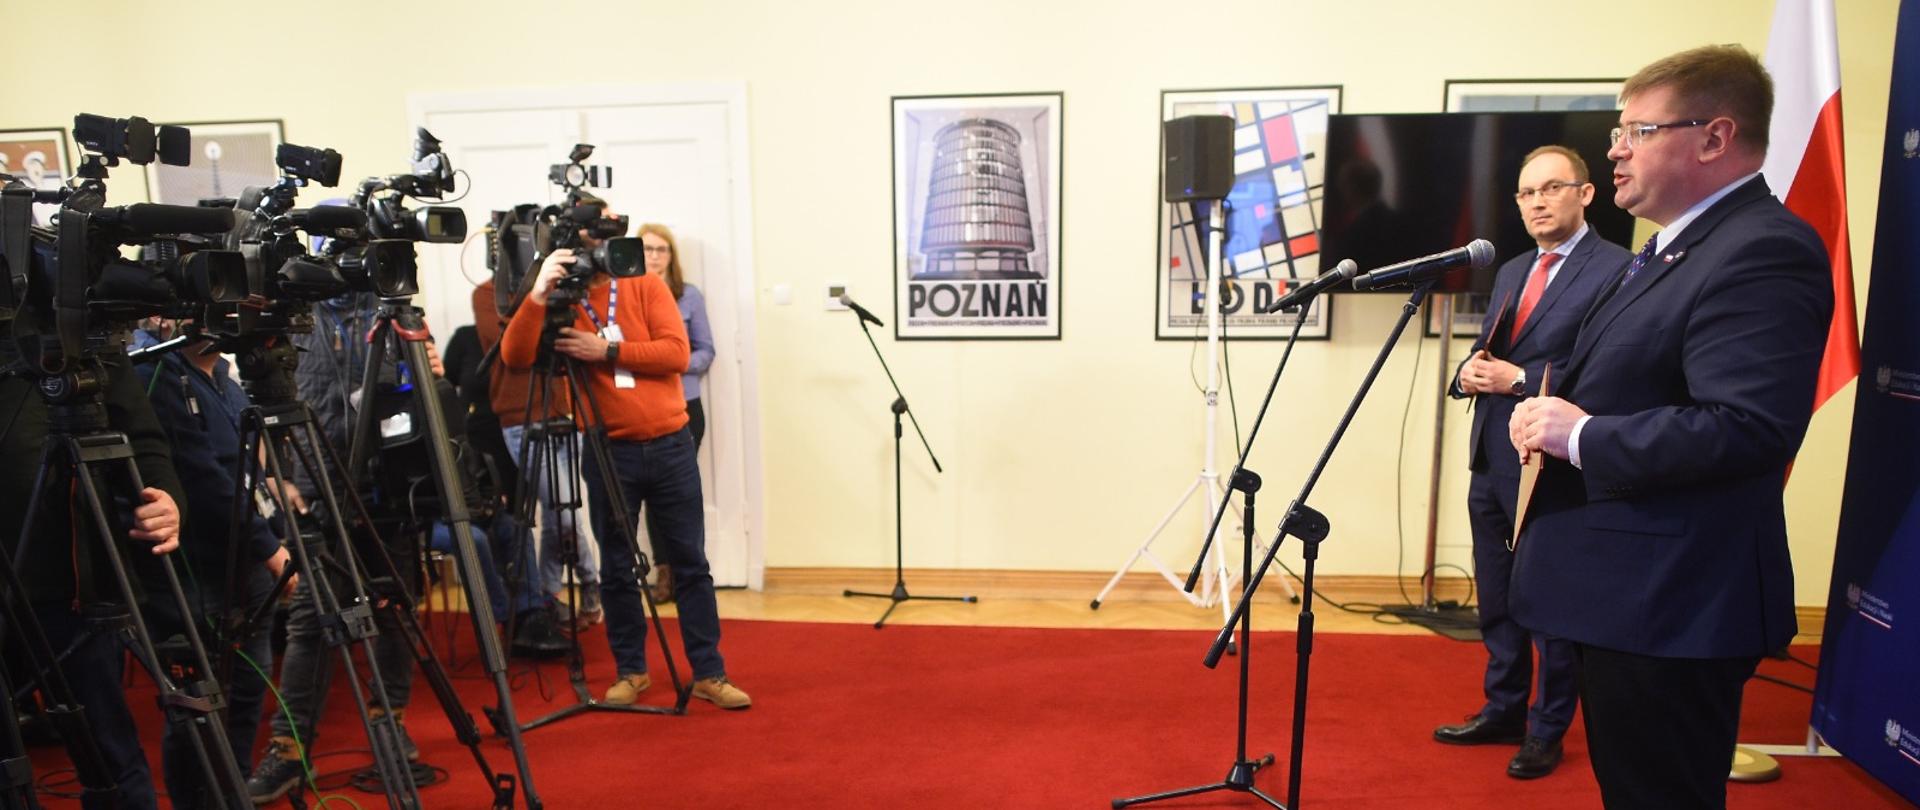 W sali wyłożonej czerwona wykładziną dywanową stoi z prawej wiceminister Rzymkowski i mówi do mikrofonu na stojaku, z lewej kilku dziennikarzy stojących przy kamerach na statywach.